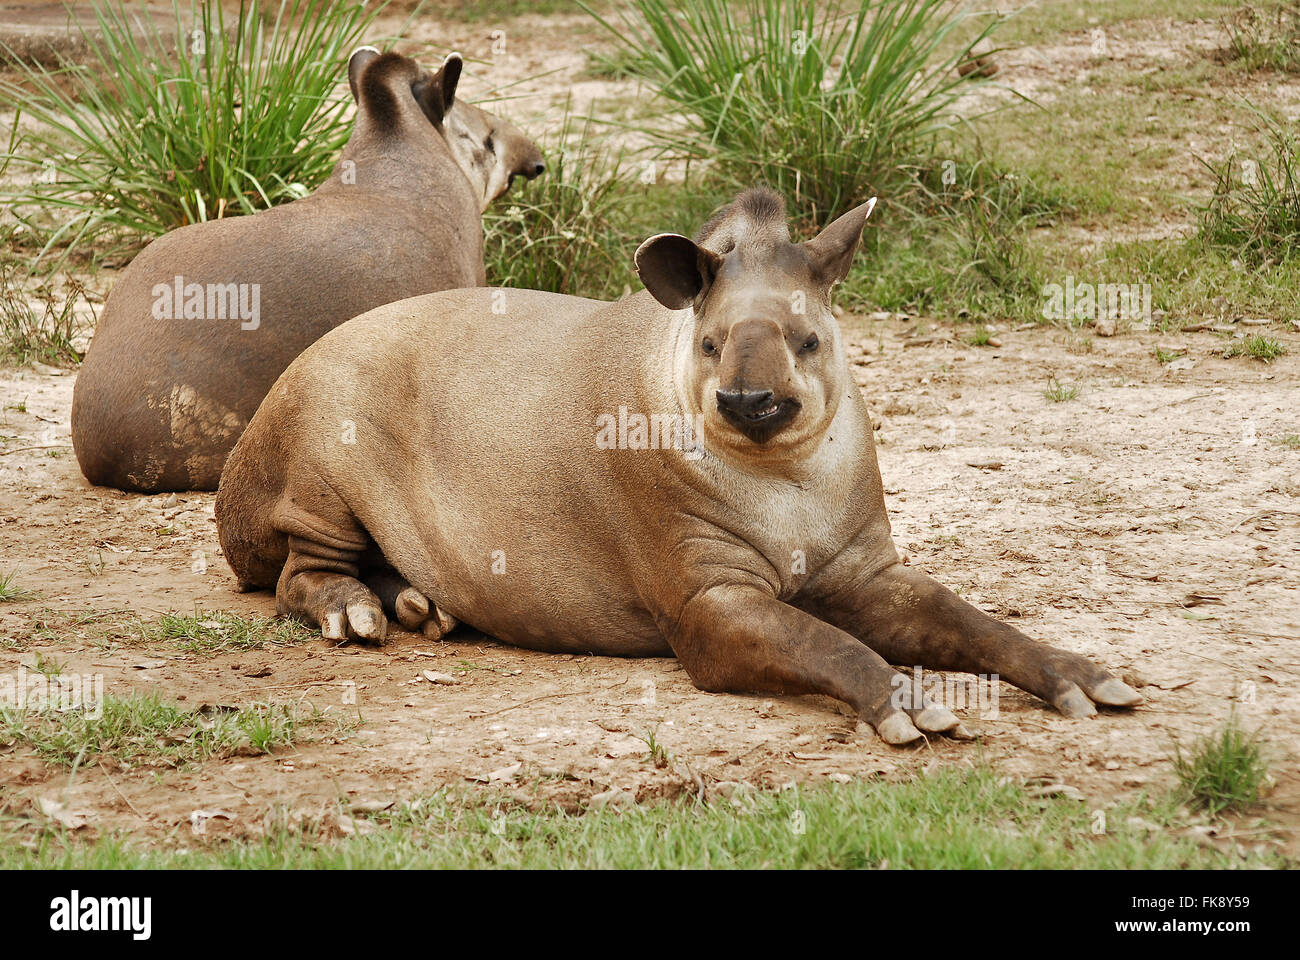 Anta mamífero más grande en el sur America-Tapirus terrestris Foto de stock